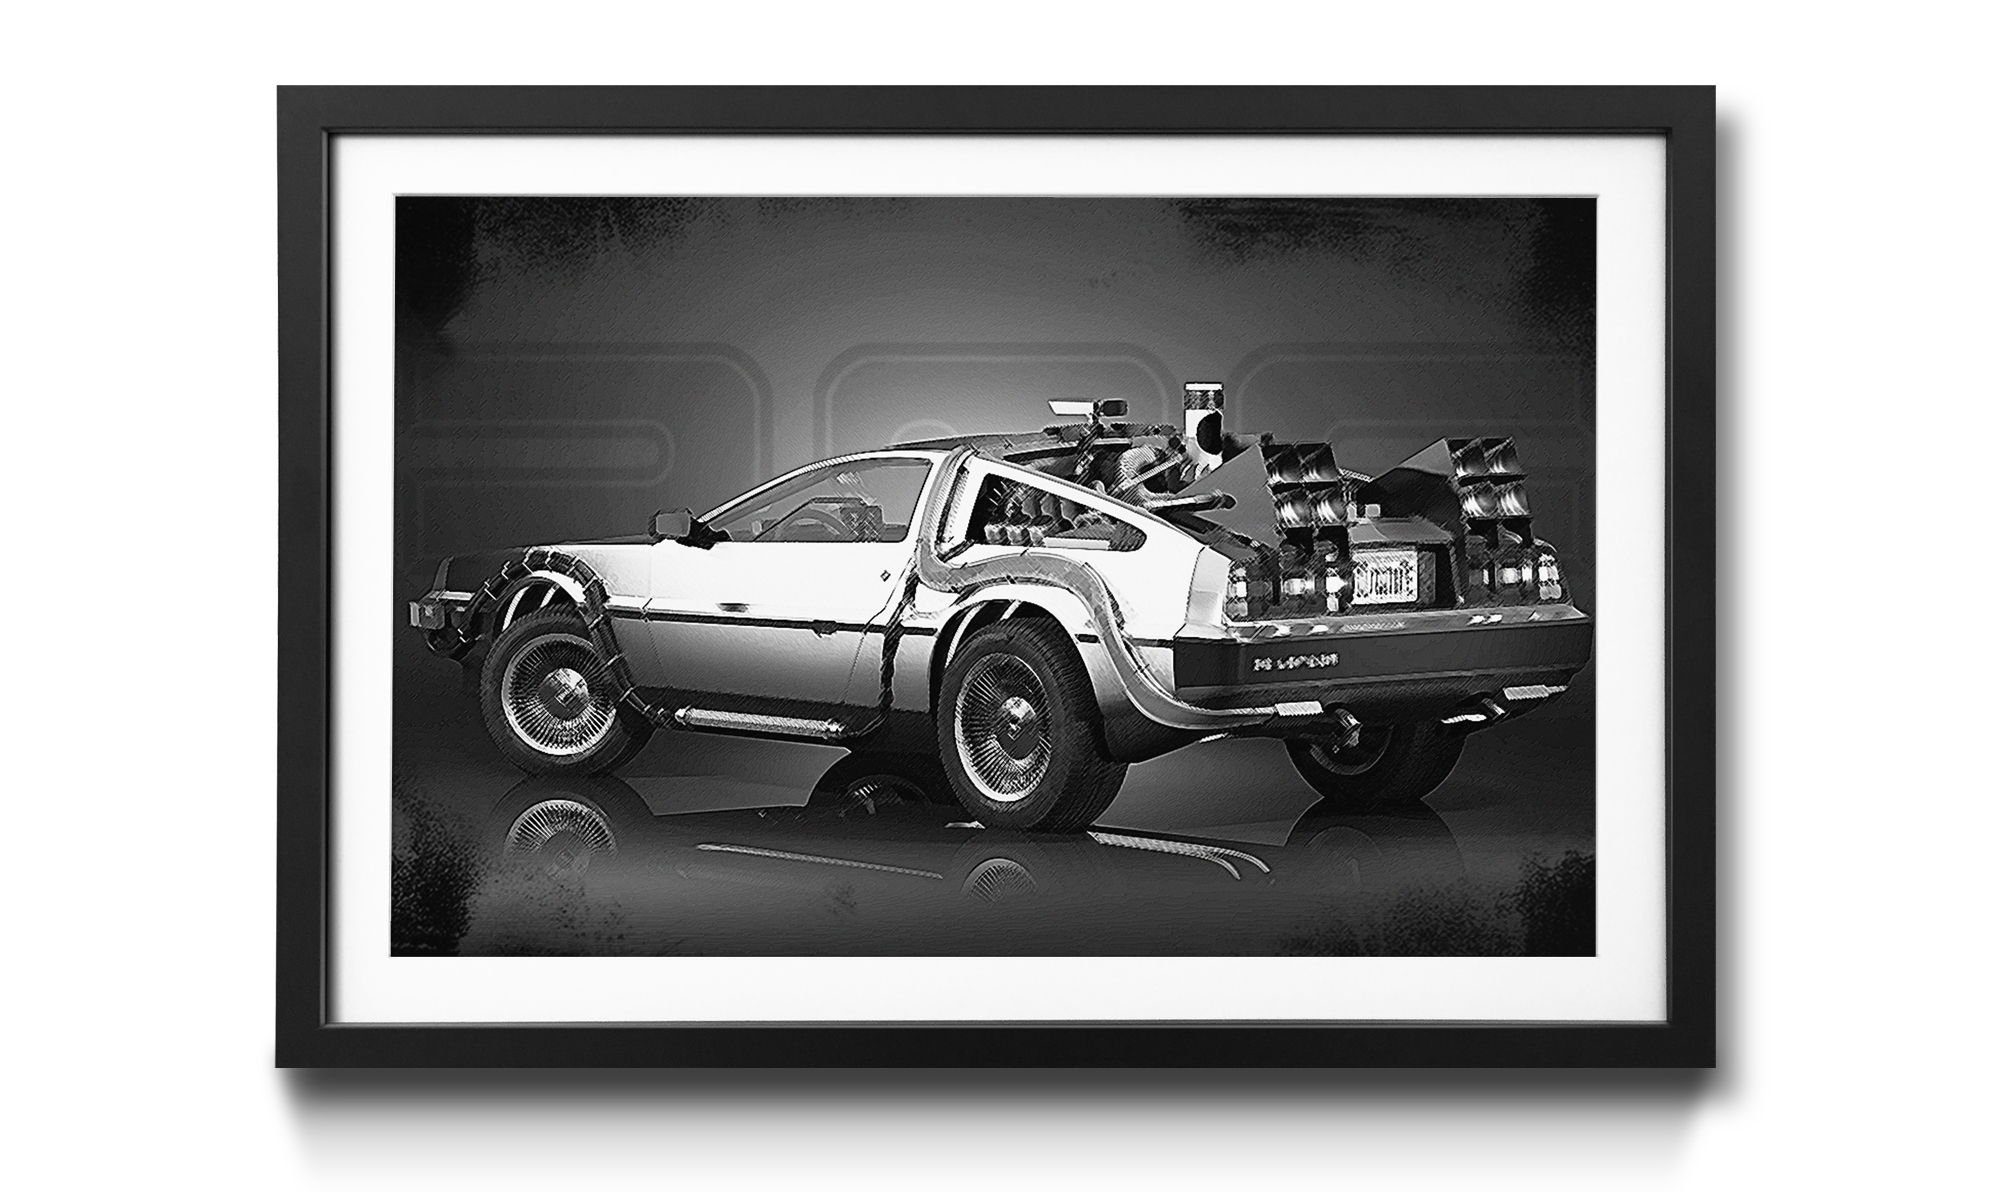 WandbilderXXL Bild mit Rahmen DeLorean, Film-Momente, Wandbild, in 4 Größen erhältlich